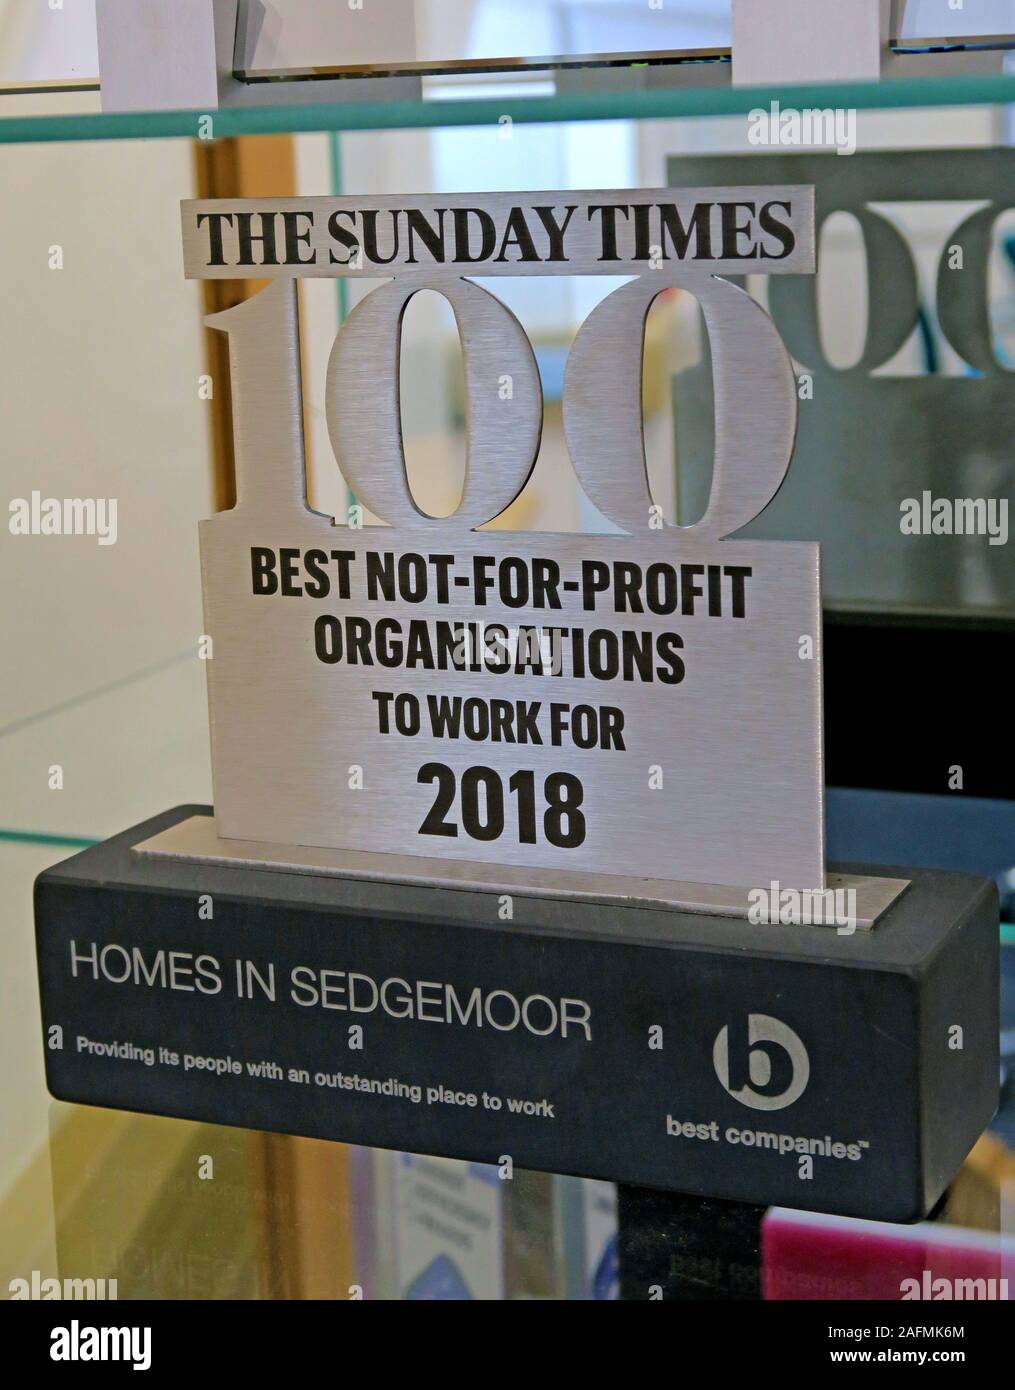 Sunday Times 100 Beste nicht für Profit-Organisationen, Auszeichnungen Kabinett, Häuser in Sedgemoor, Bridgwater, preisgekrönte Sozialwohnungen Vermieter Stockfoto